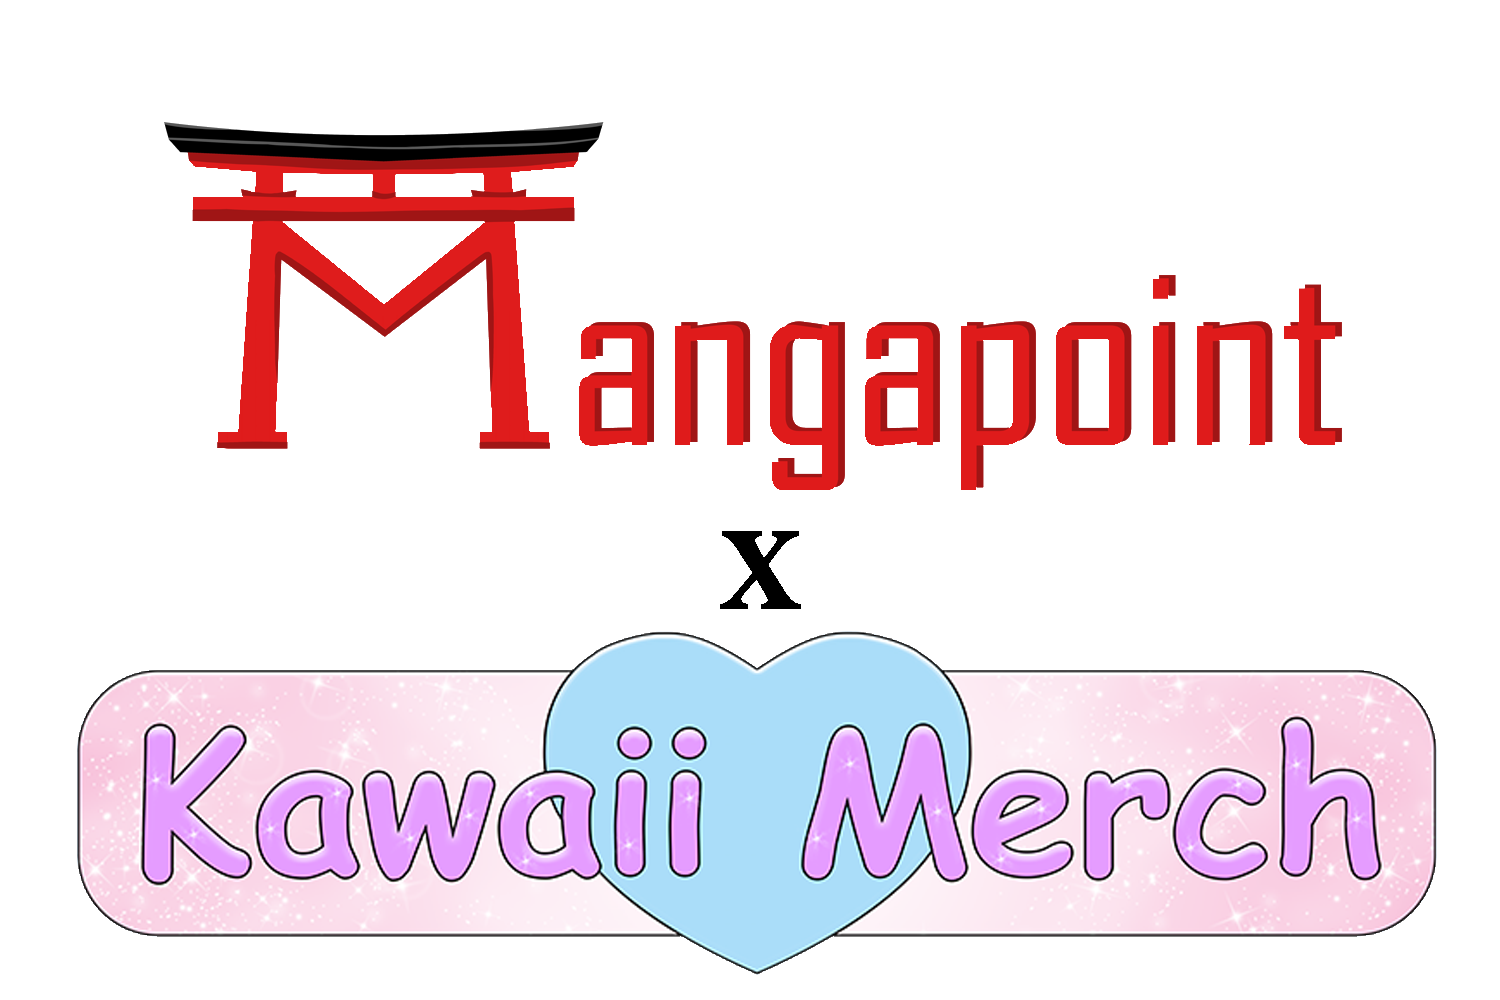 Kawaii Merch